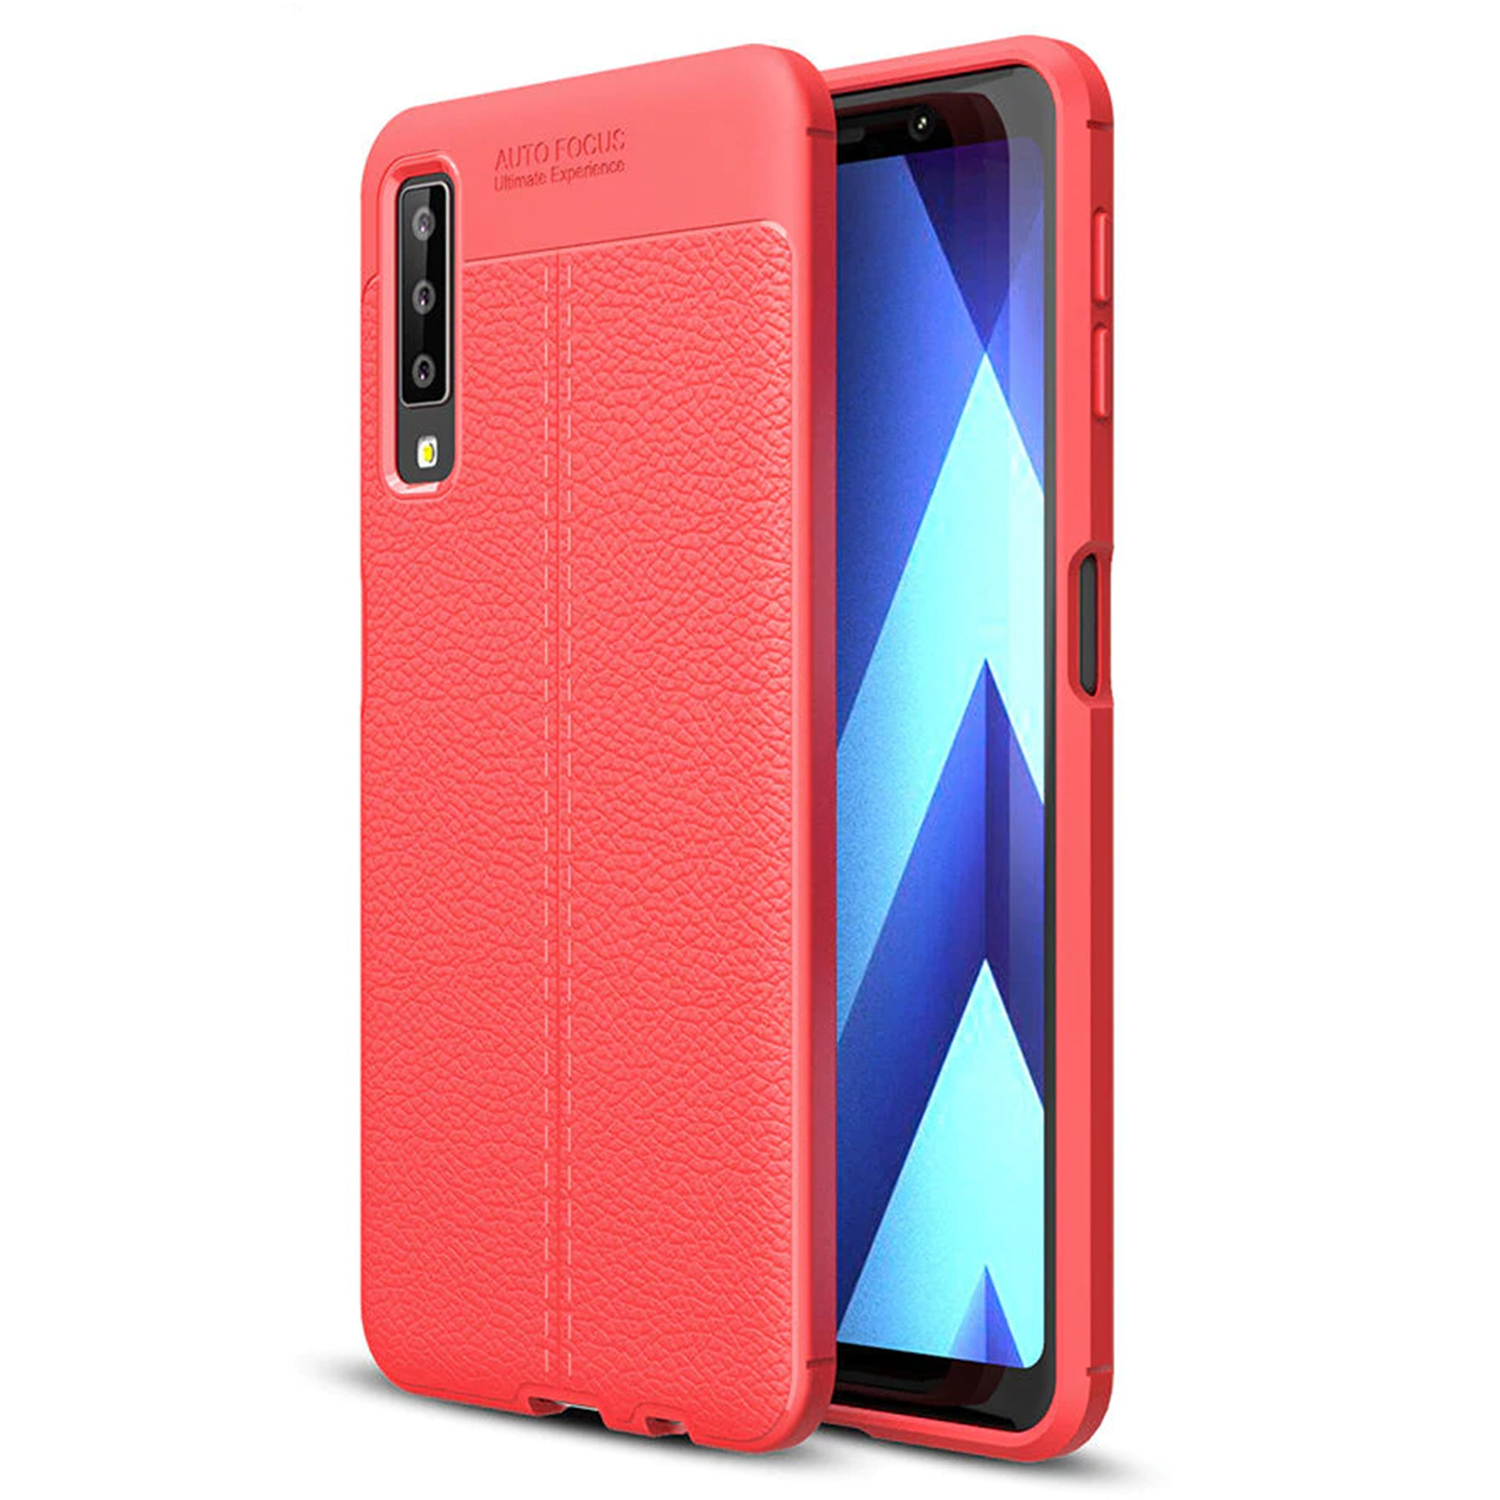 Microsonic Samsung Galaxy A7 2018 Kılıf Deri Dokulu Silikon Kırmızı